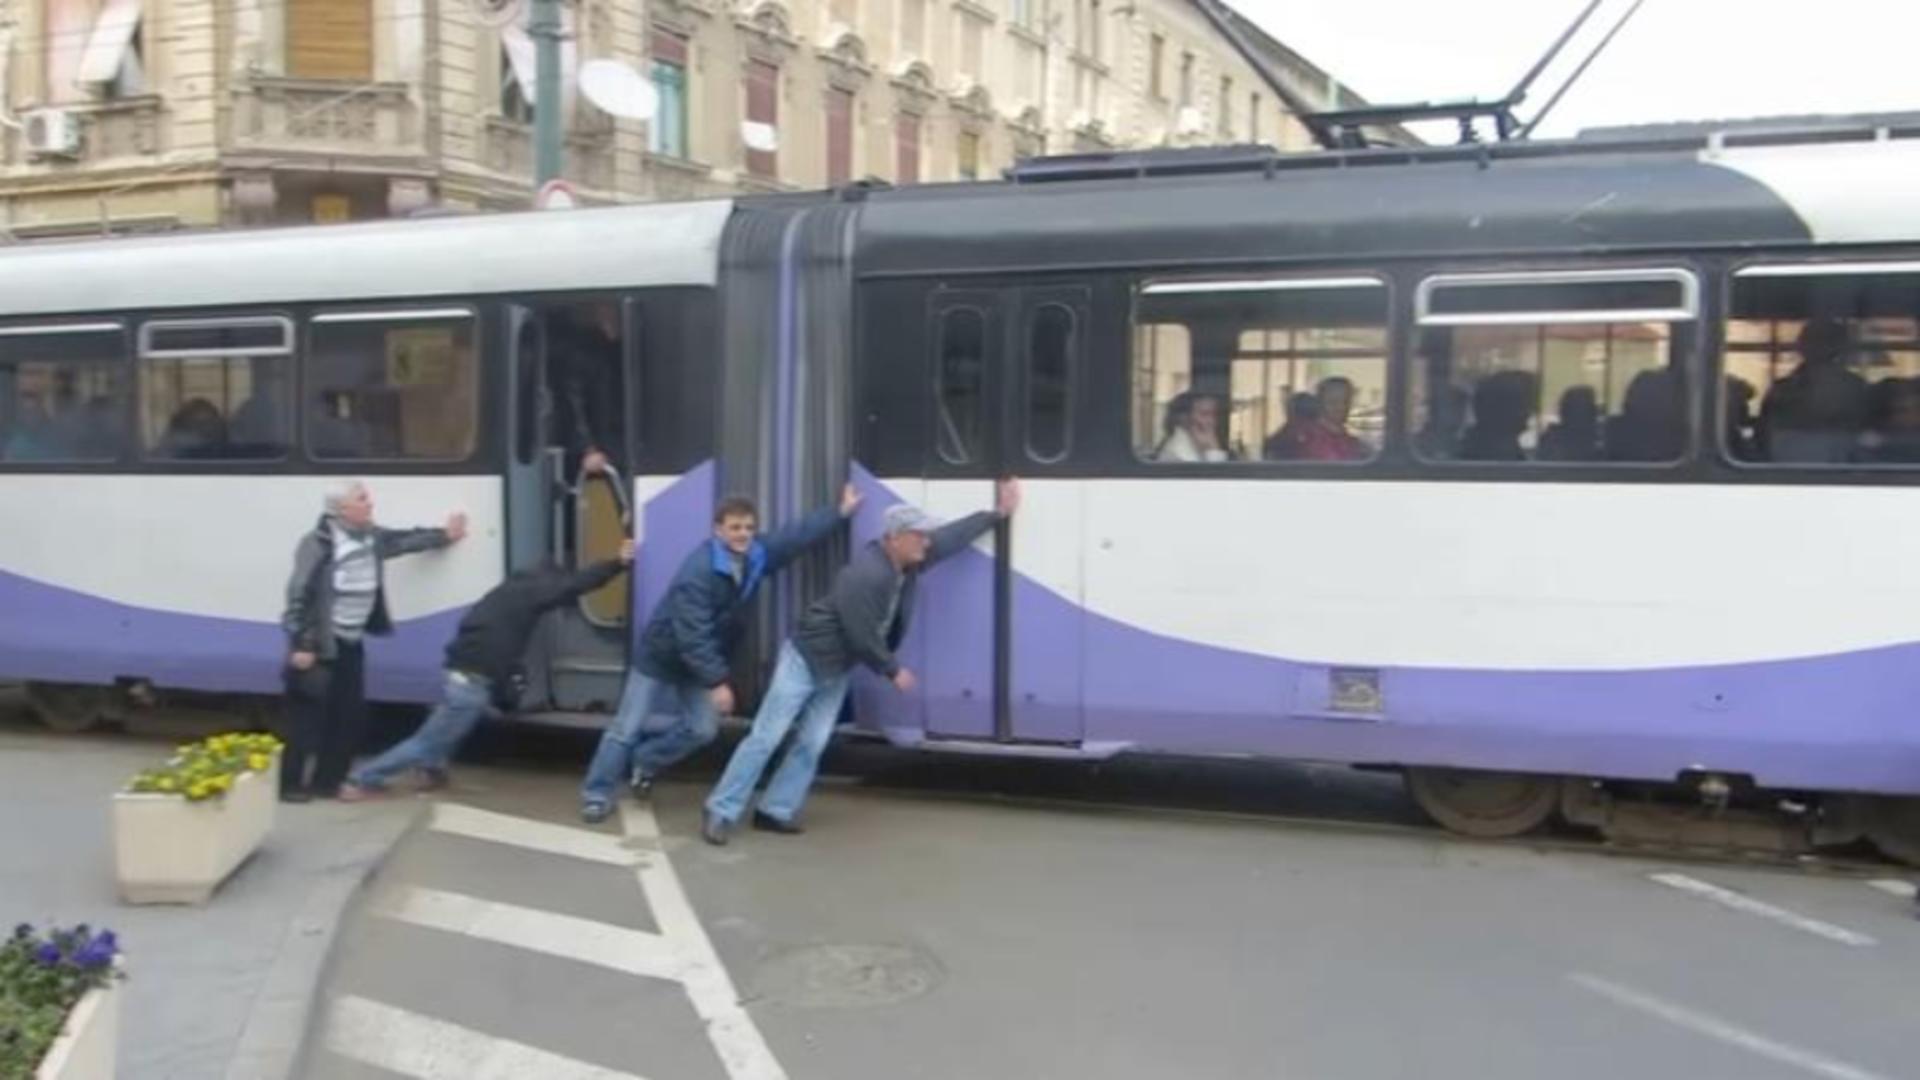 Tramvai împins de călători după ce s-a oprit în mijlocul unei intersecții din Timișoara – VIDEO